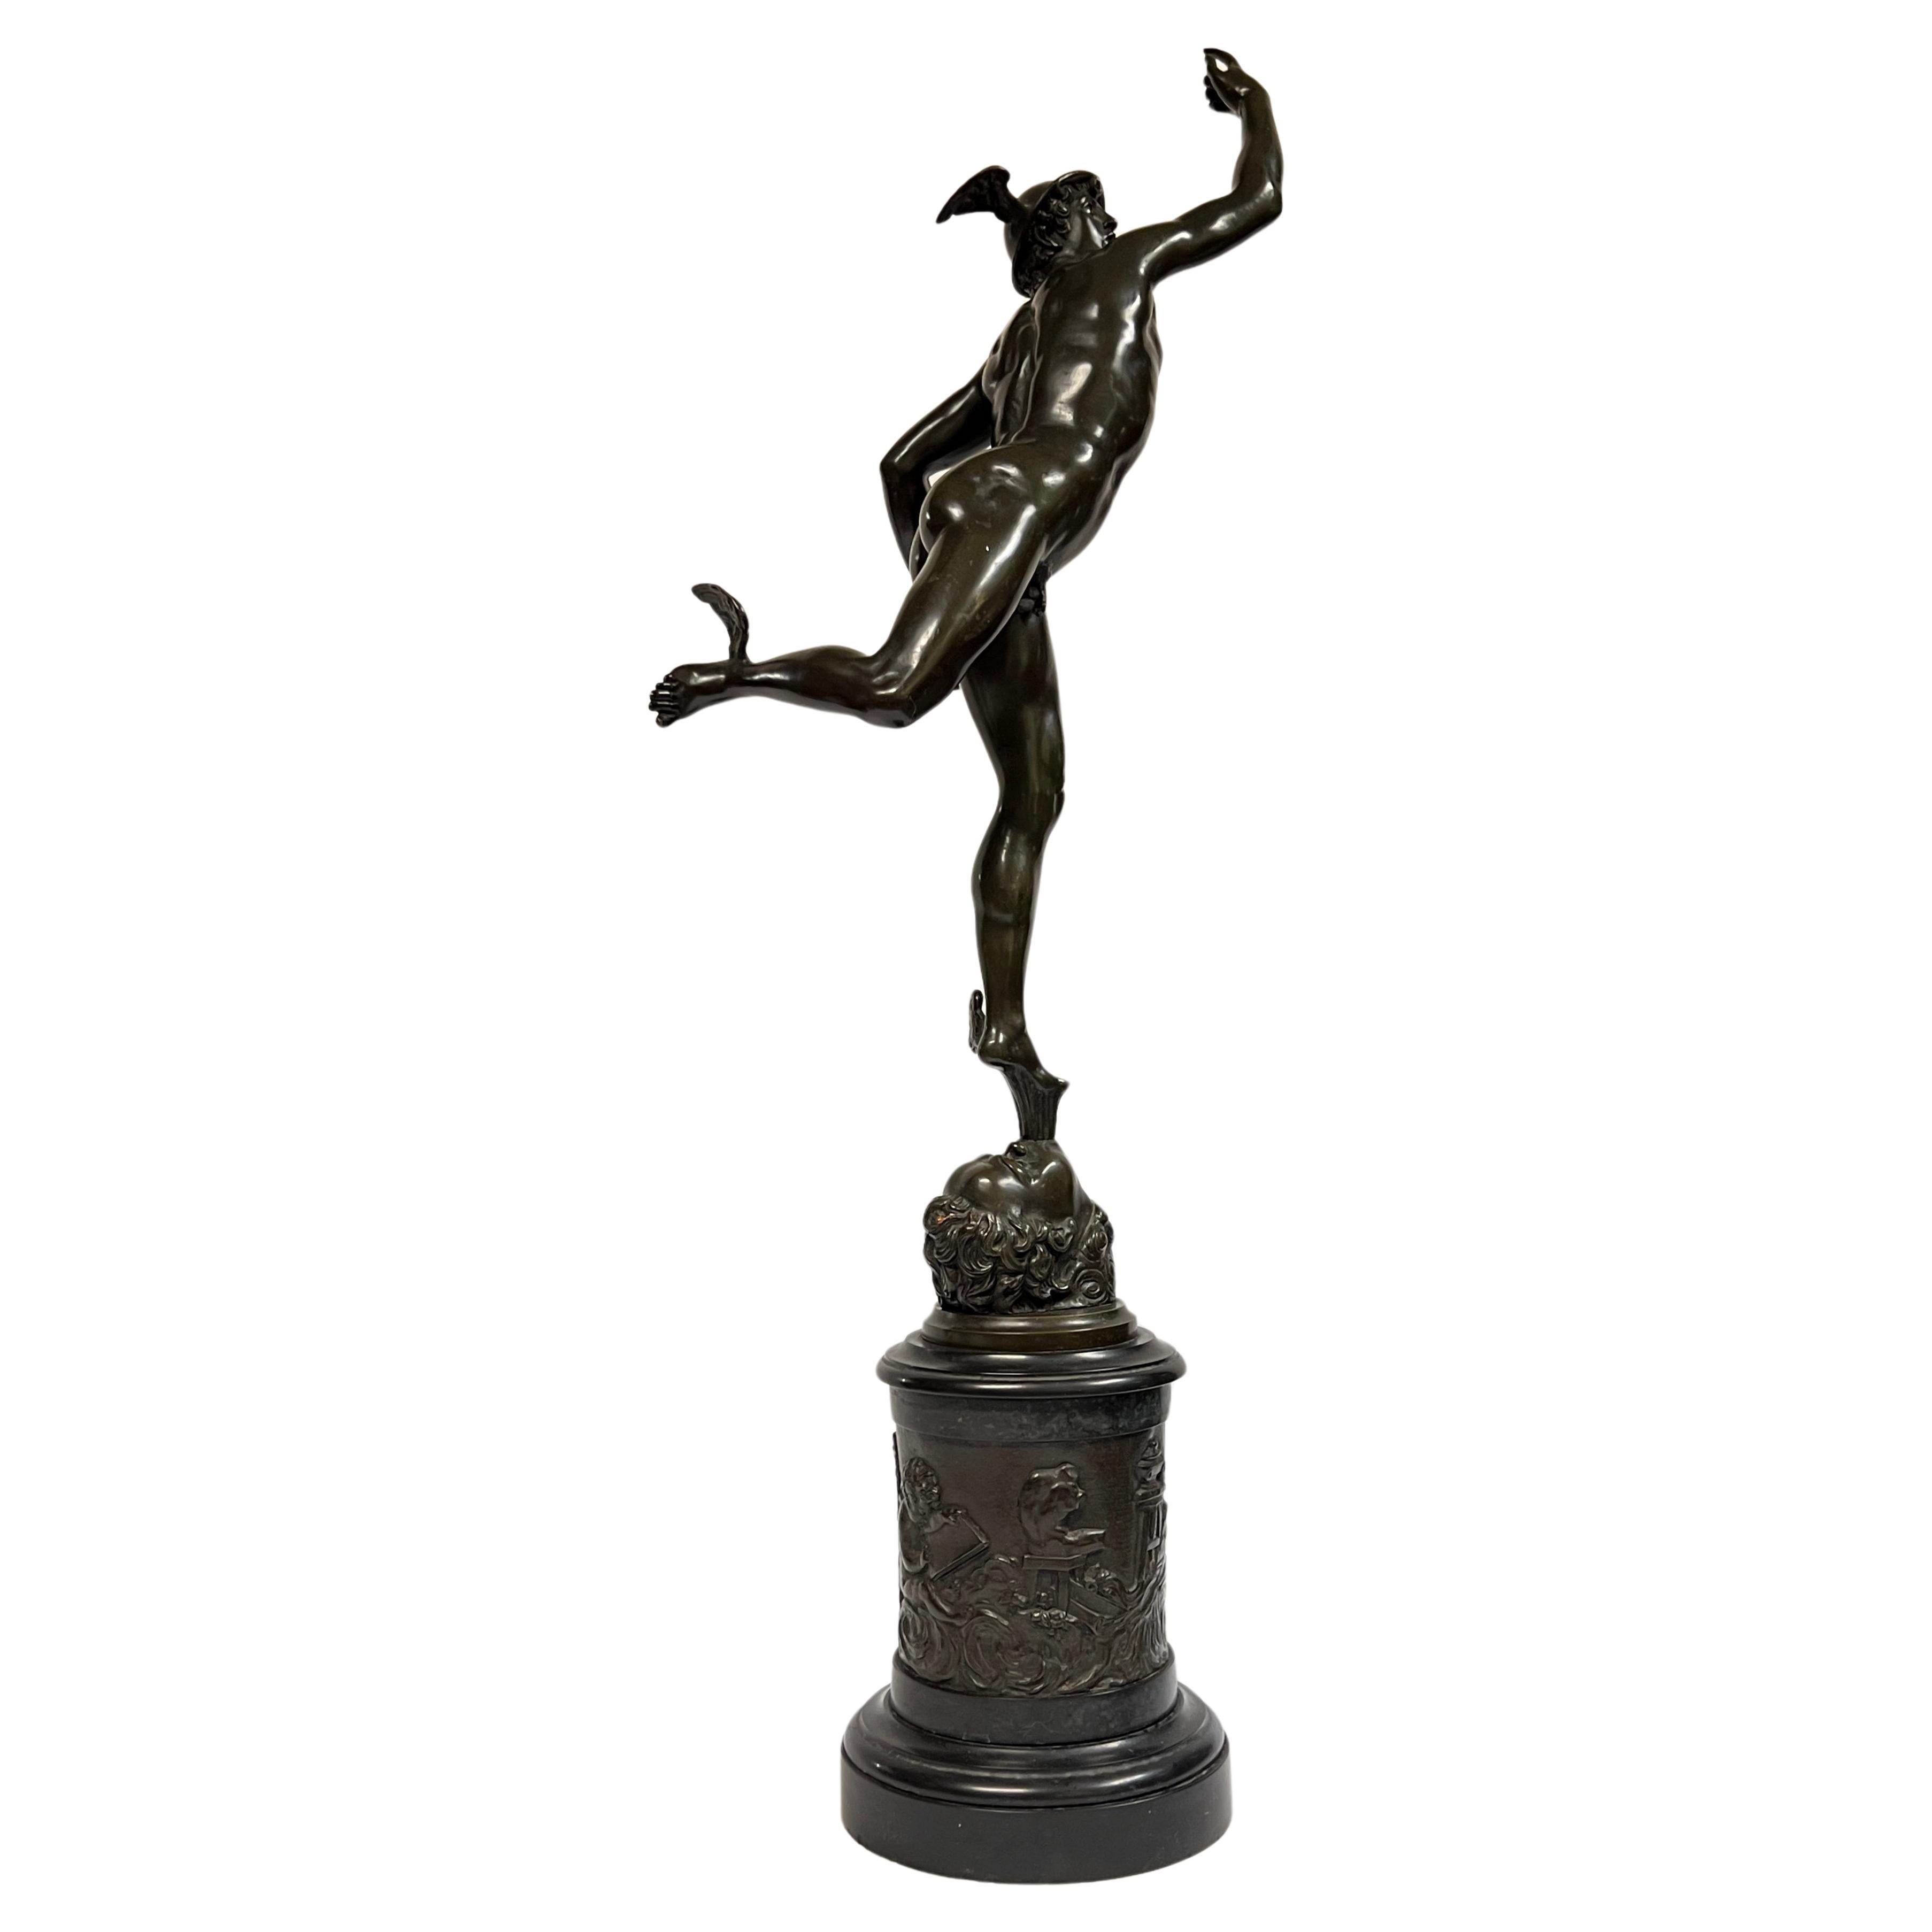 Sculpture en bronze du 19ème siècle, d'après Giambologna Grand Tour